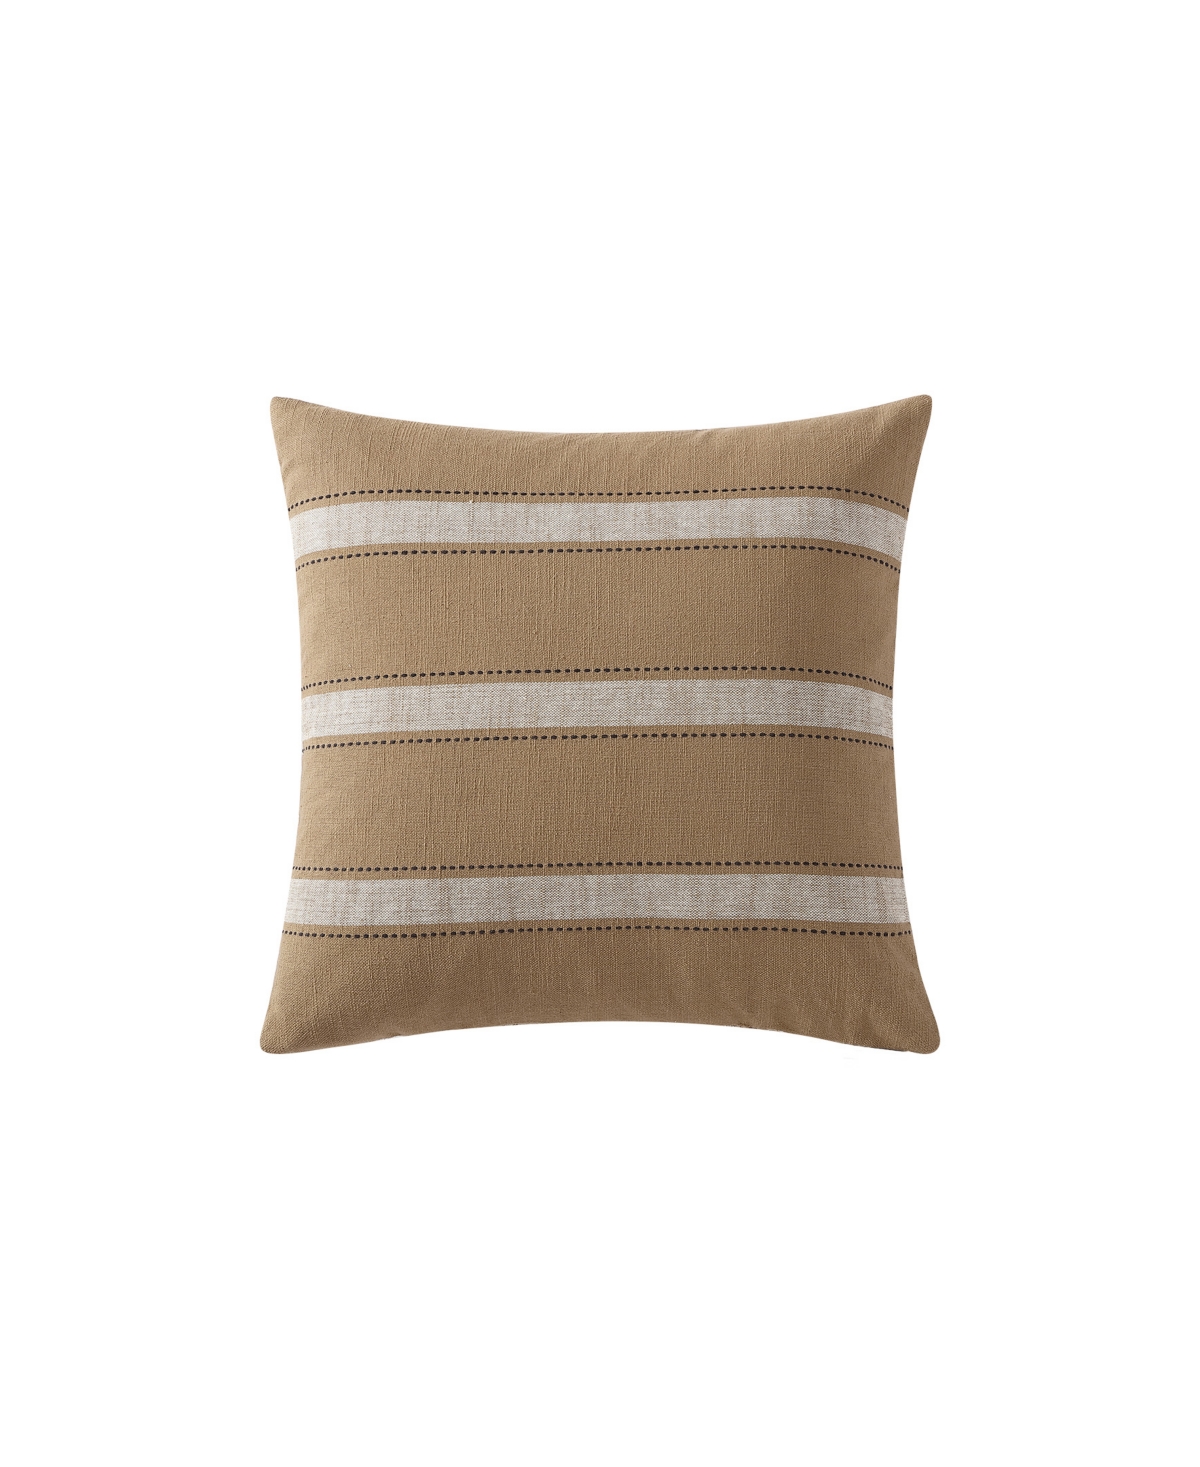 Striped Matter Decorative Pillow, 20 x 20